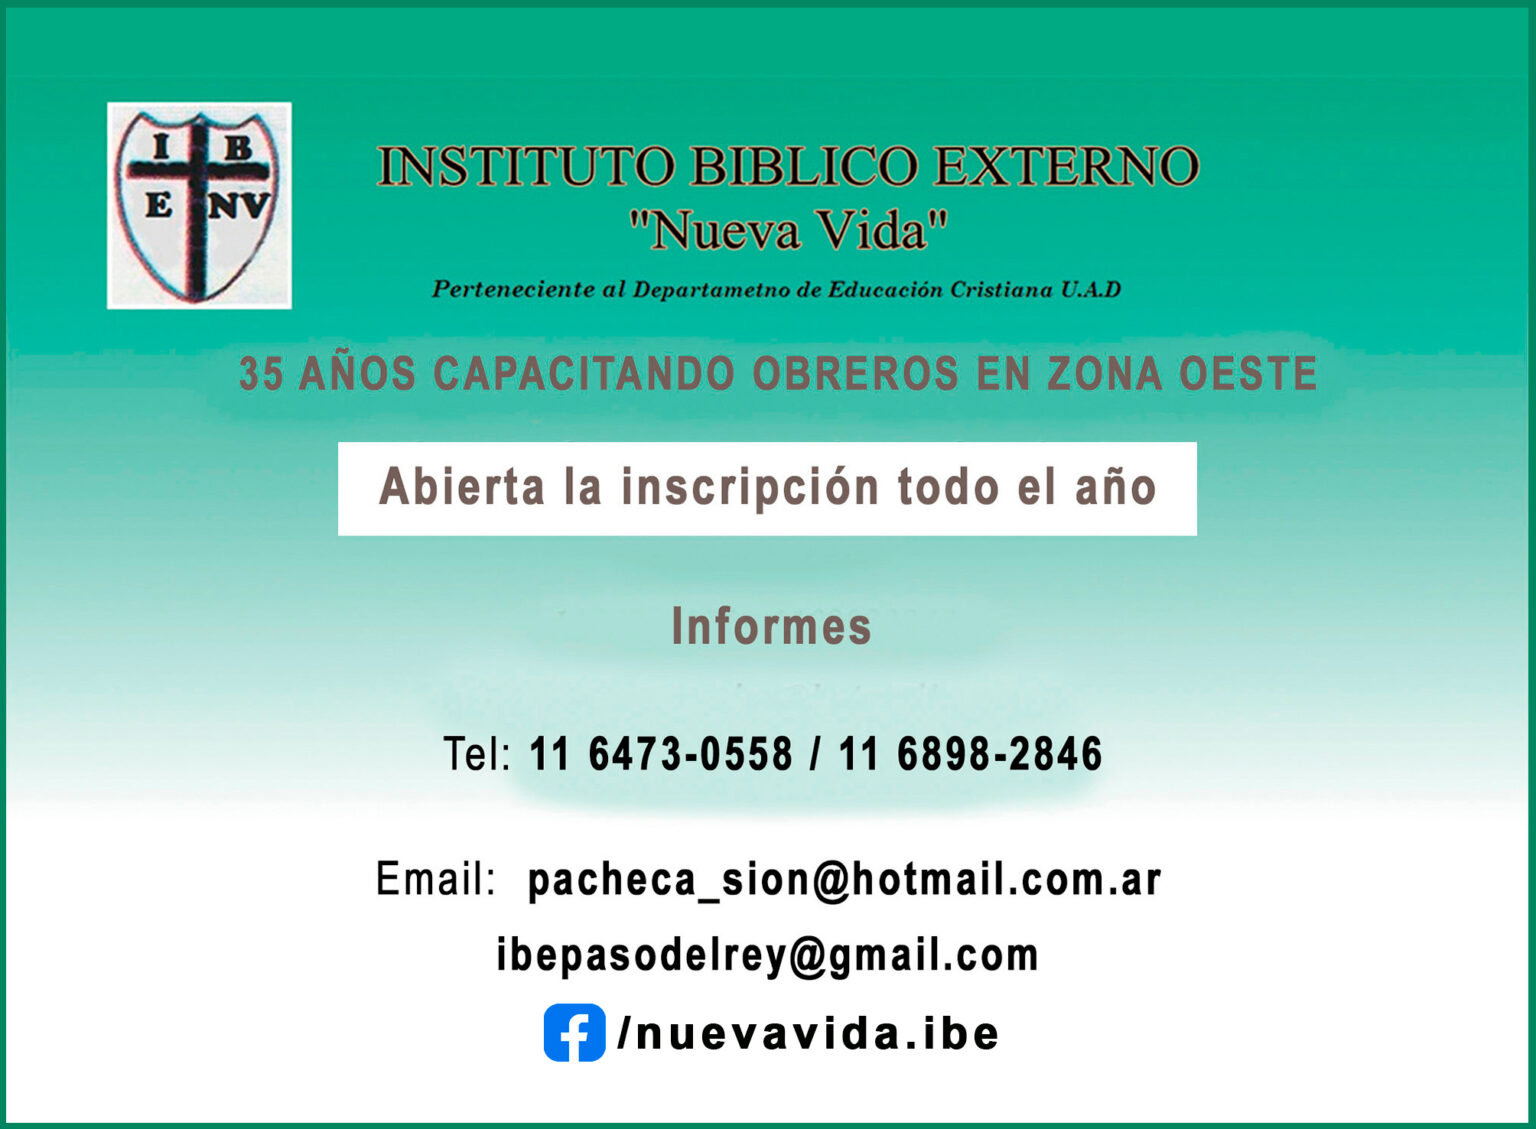 Instituto Bíblico Externo Nueva Vida Educa Cristiana Argentina